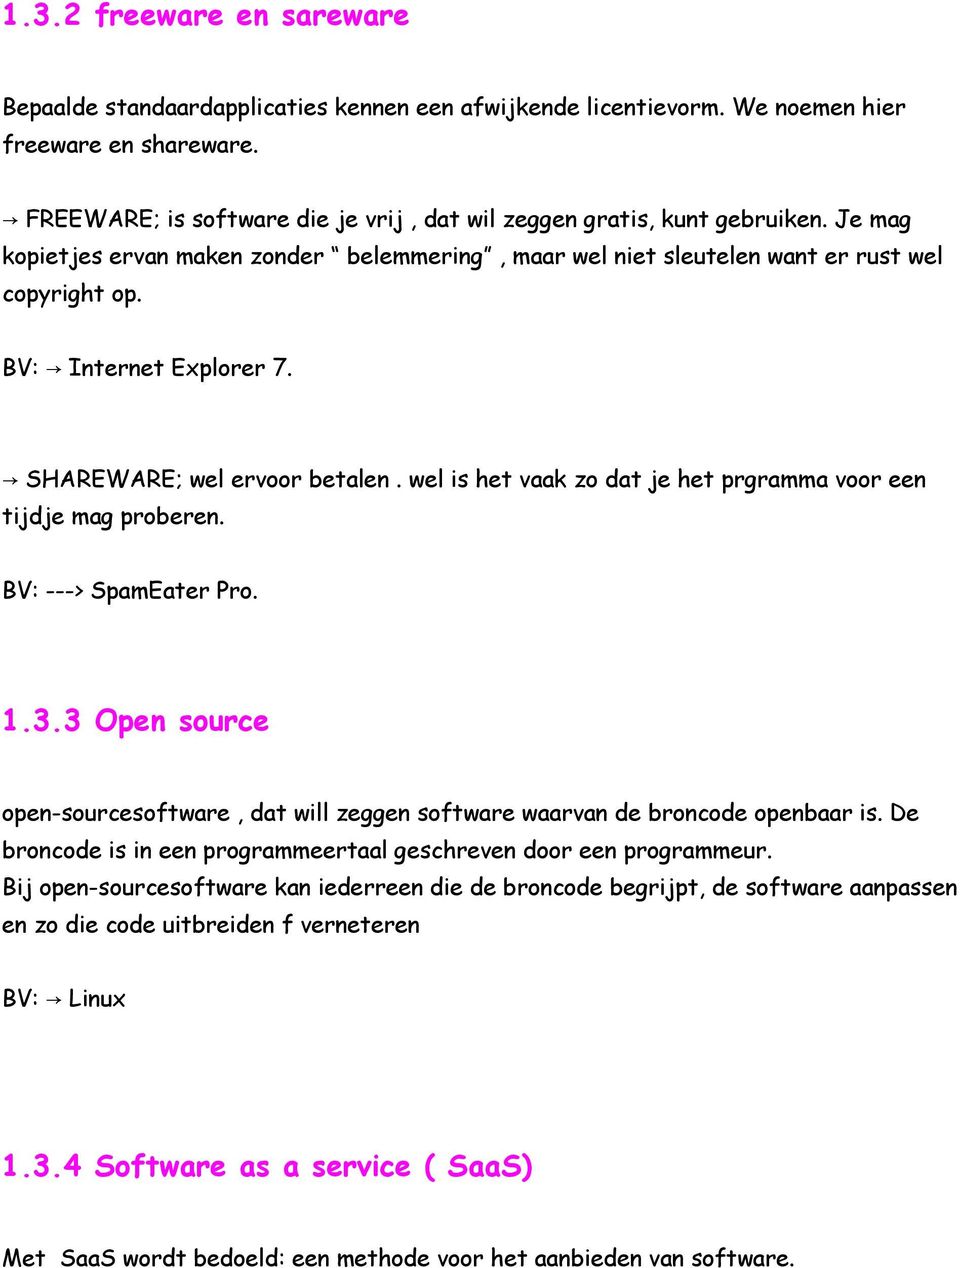 BV: Internet Explorer 7. SHAREWARE; wel ervoor betalen. wel is het vaak zo dat je het prgramma voor een tijdje mag proberen. BV: ---> SpamEater Pro. 1.3.